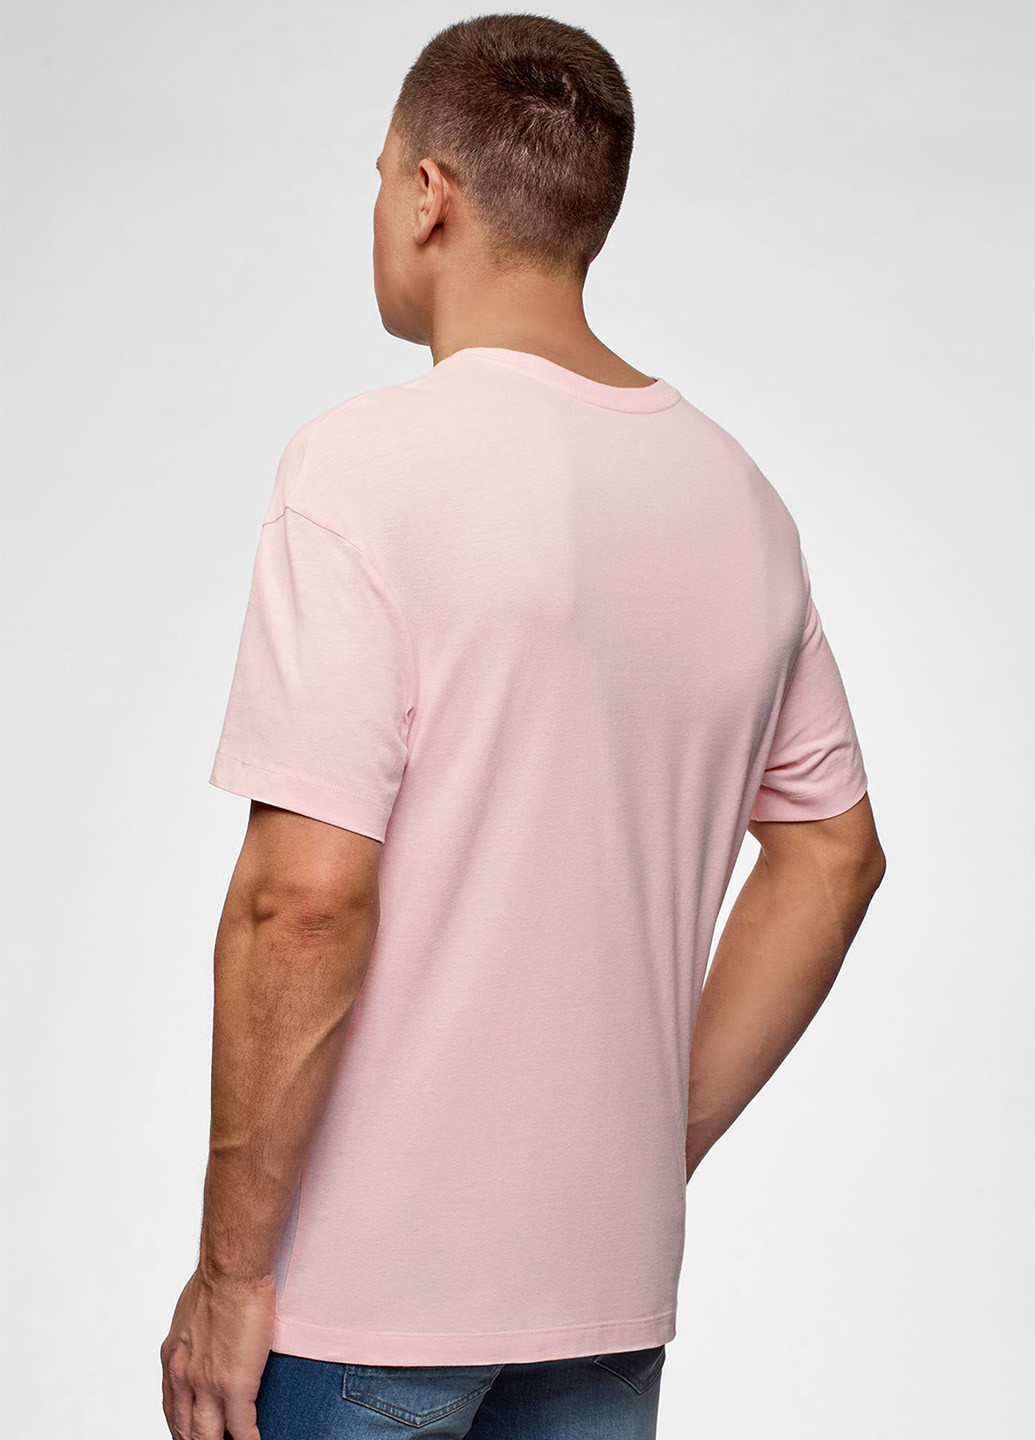 Розовая футболка Oodji